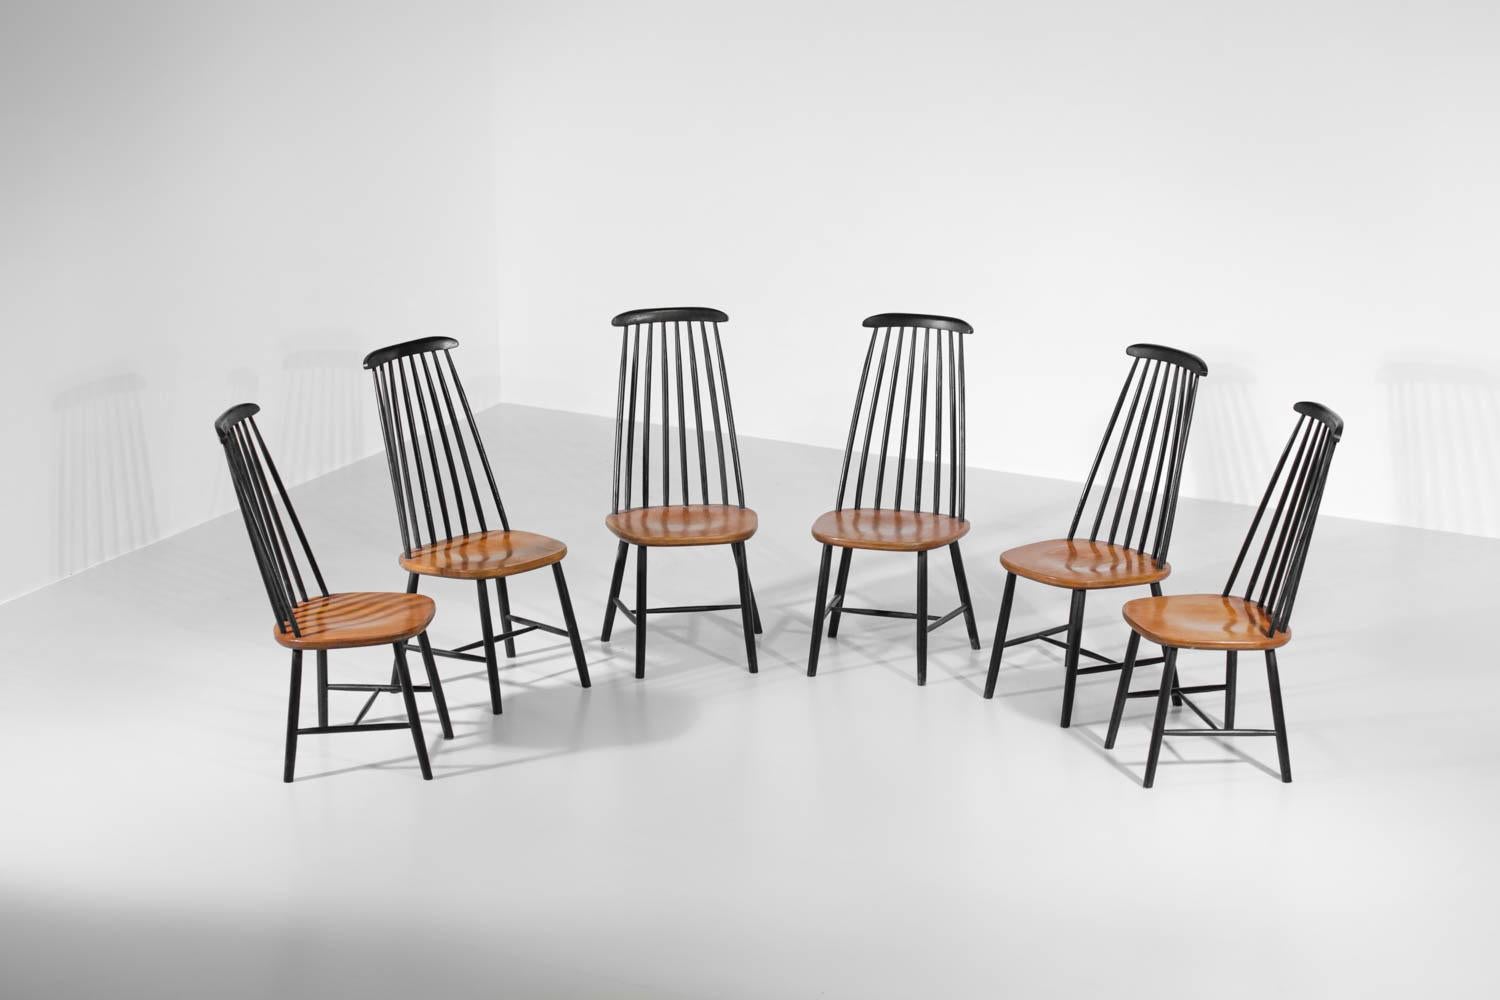 Ensemble de 6 chaises scandinaves vintage du designer finlandais Ilmari Tapiovaara datant des années 60. La structure, les dossiers et les sièges en bois de hêtre ont été peints en noir (peinture d'origine). Très bel état vintage de ce lot, à noter